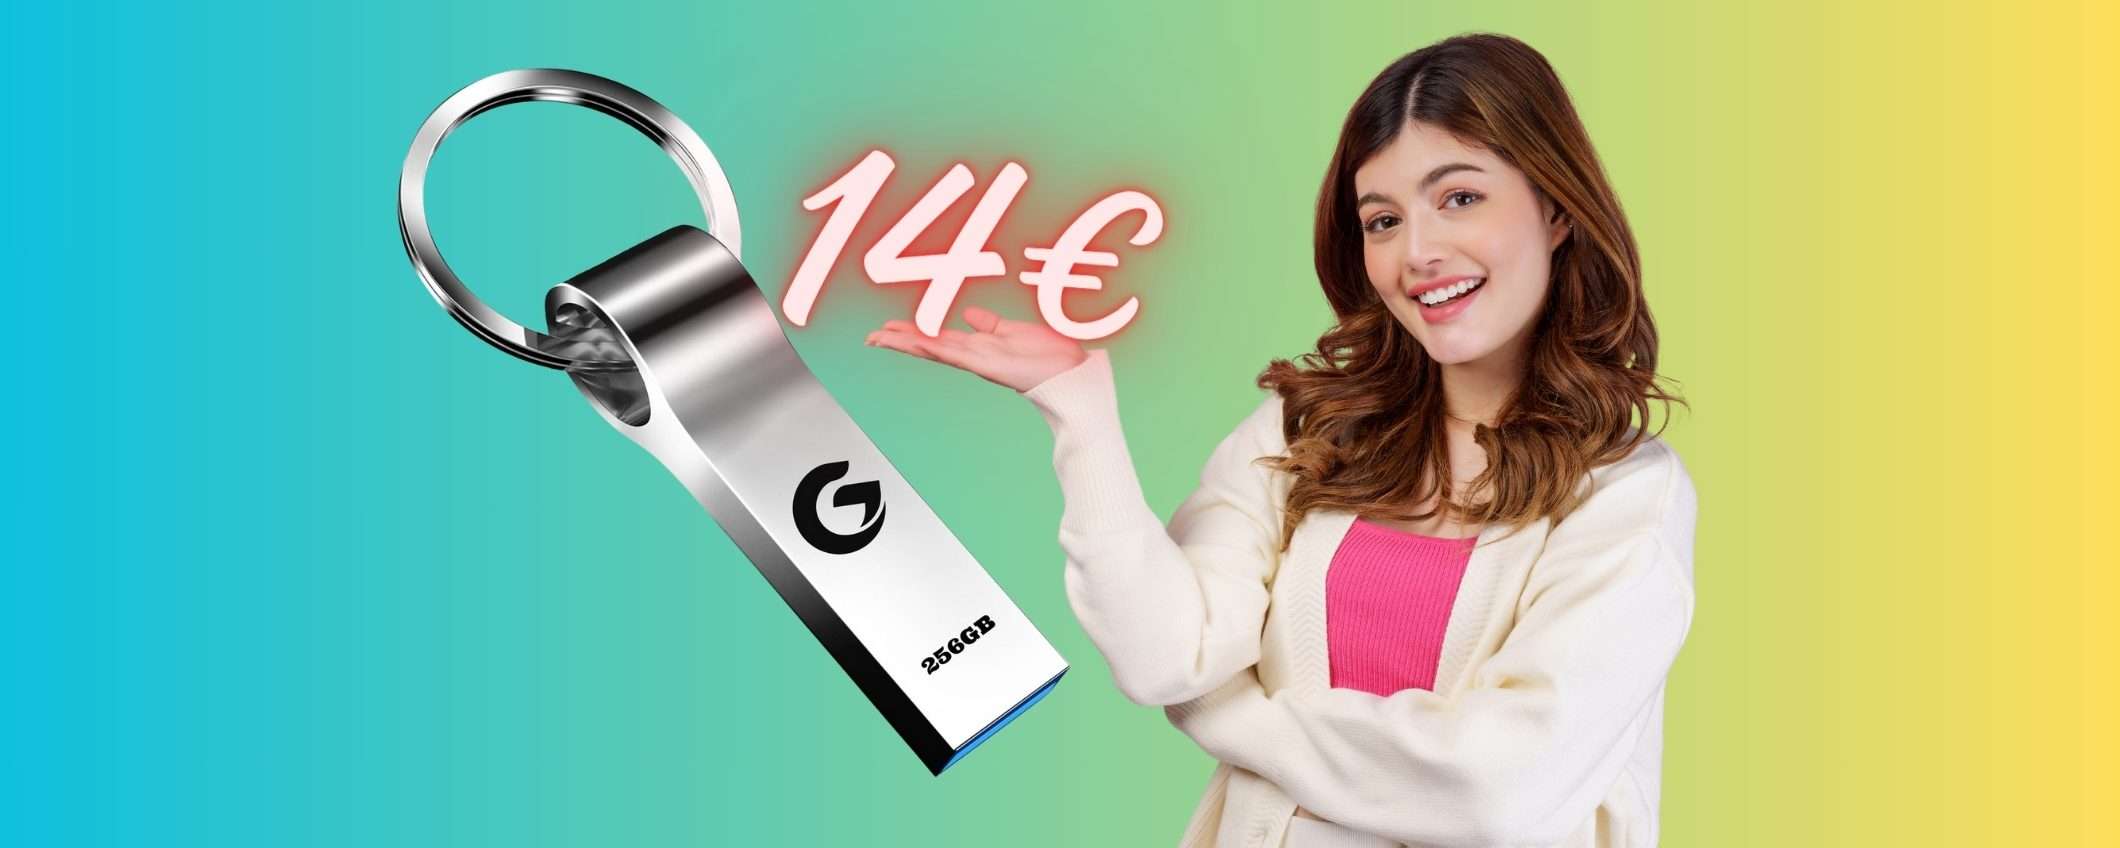 Chiavetta USB da 256 GB elegante e robusta a soli 14€ su Amazon